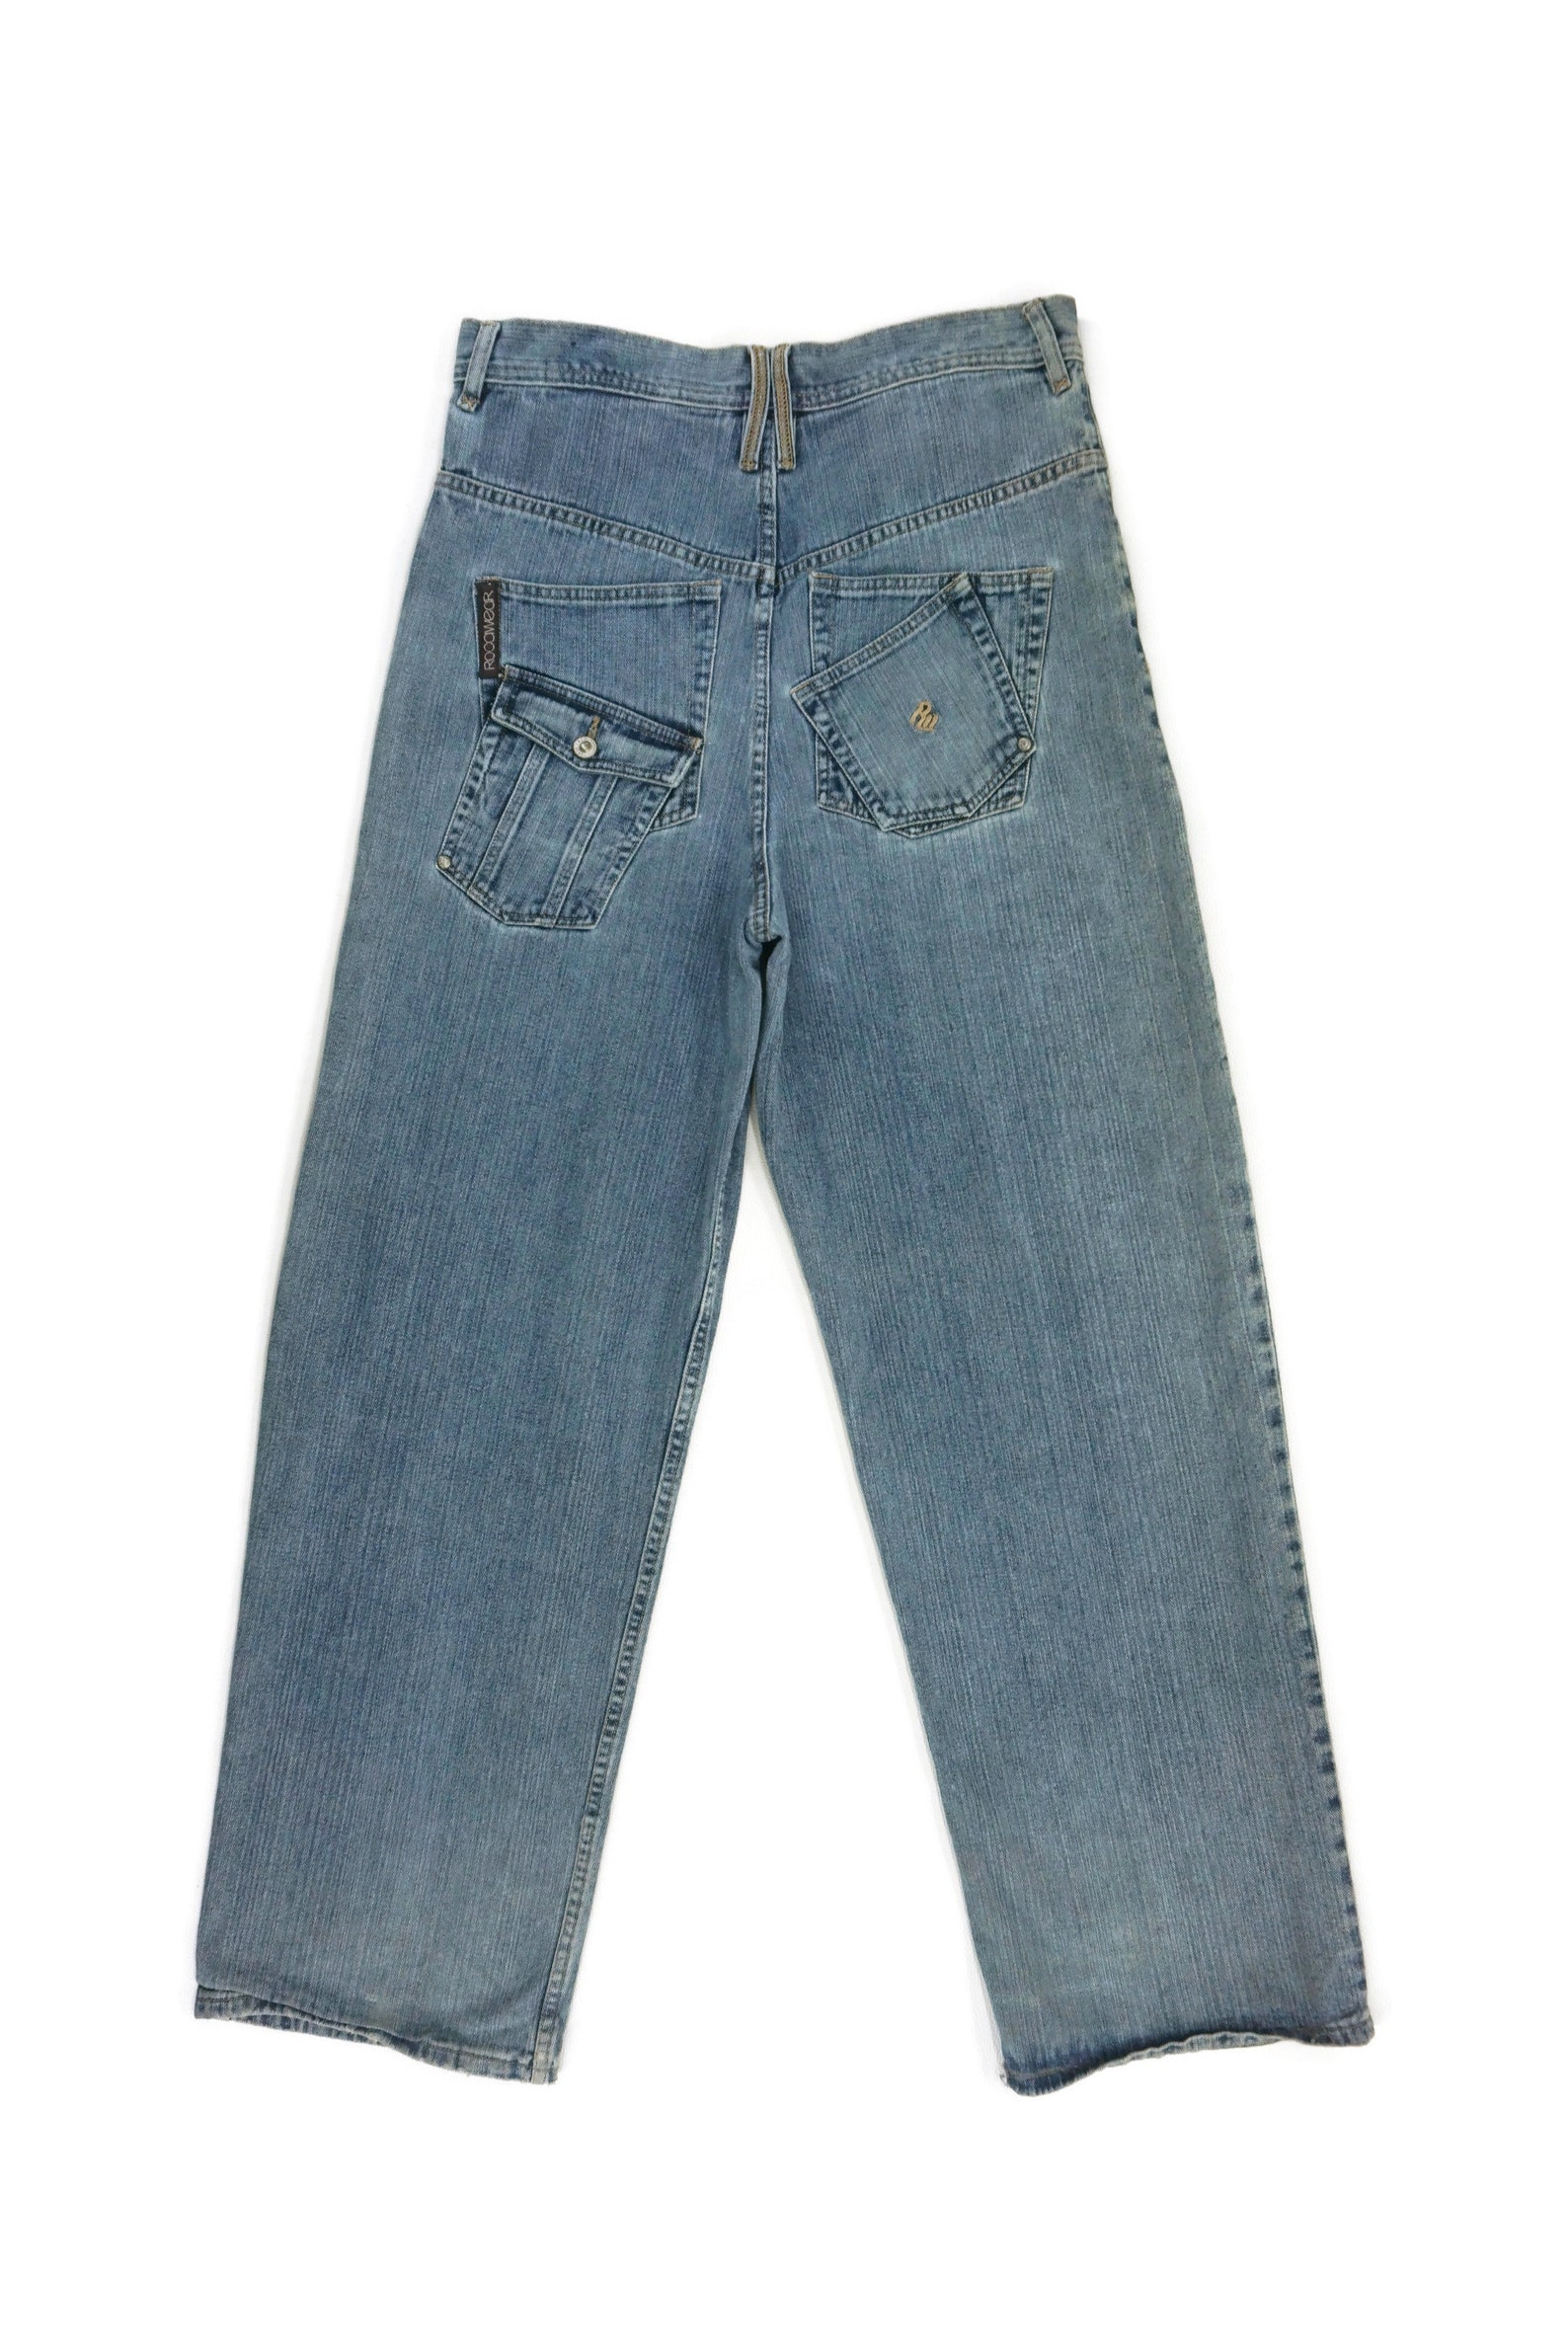 ROCAWEAR Jeans Size 34 W35xL33.25 Vintage Rocawear Denim Jeans | Etsy